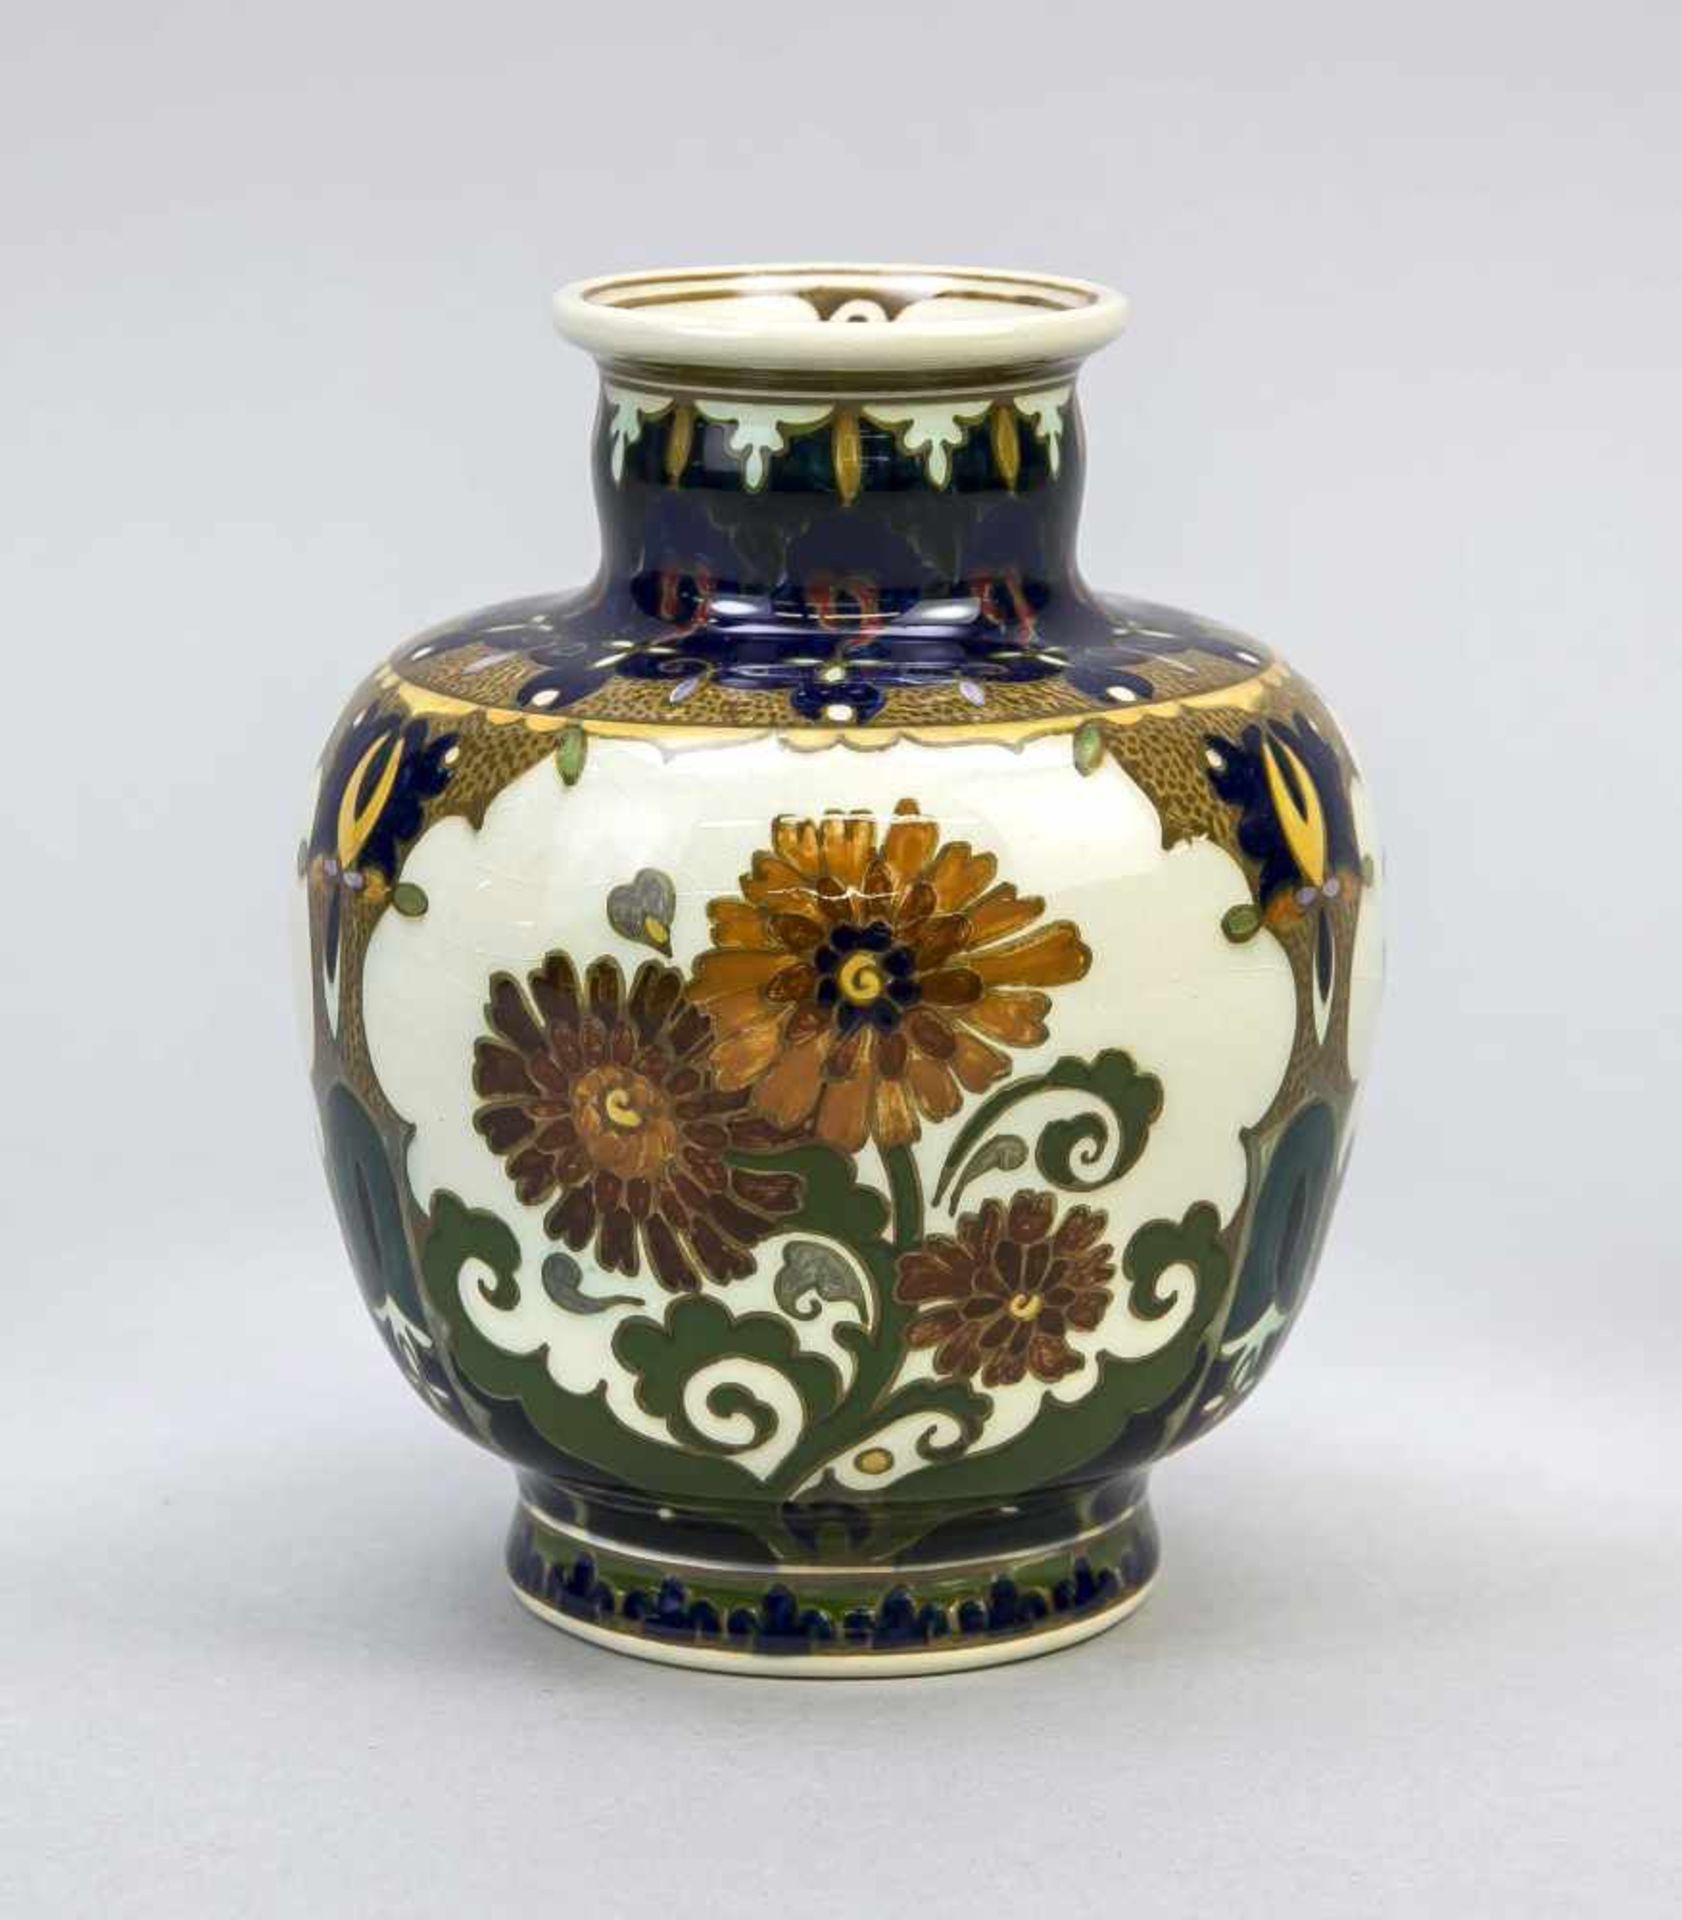 Jugendstil Vase, Rozenburg, den Haag, Anf. 20. Jh., Keramik, glasiert, gebauchte Form,umlaufende